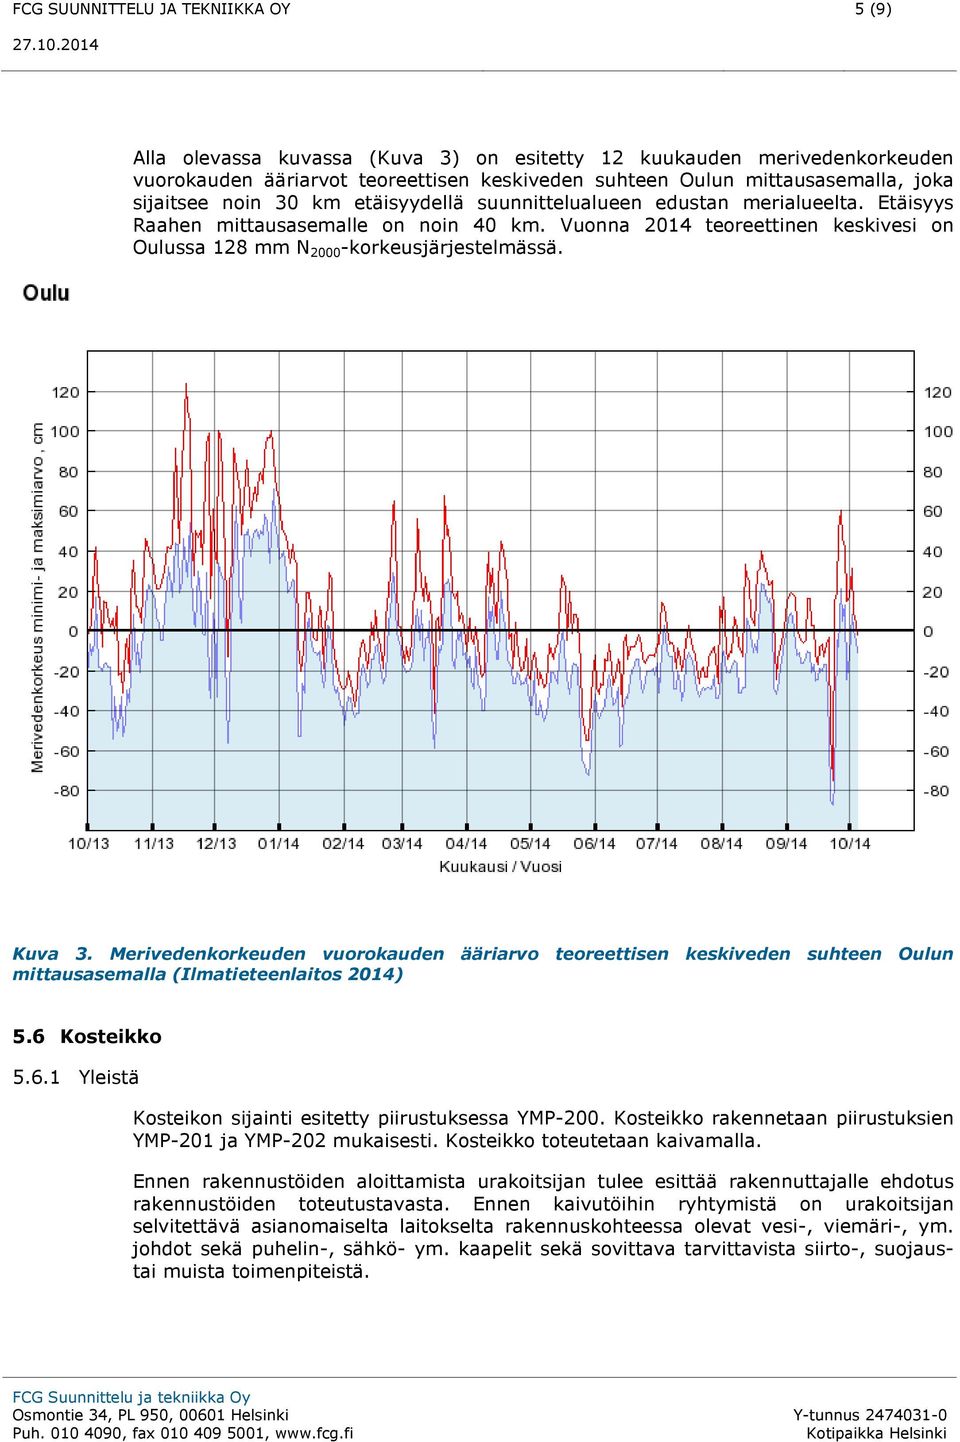 Vuonna 2014 teoreettinen keskivesi on Oulussa 128 mm N 2000 -korkeusjärjestelmässä. Kuva 3.